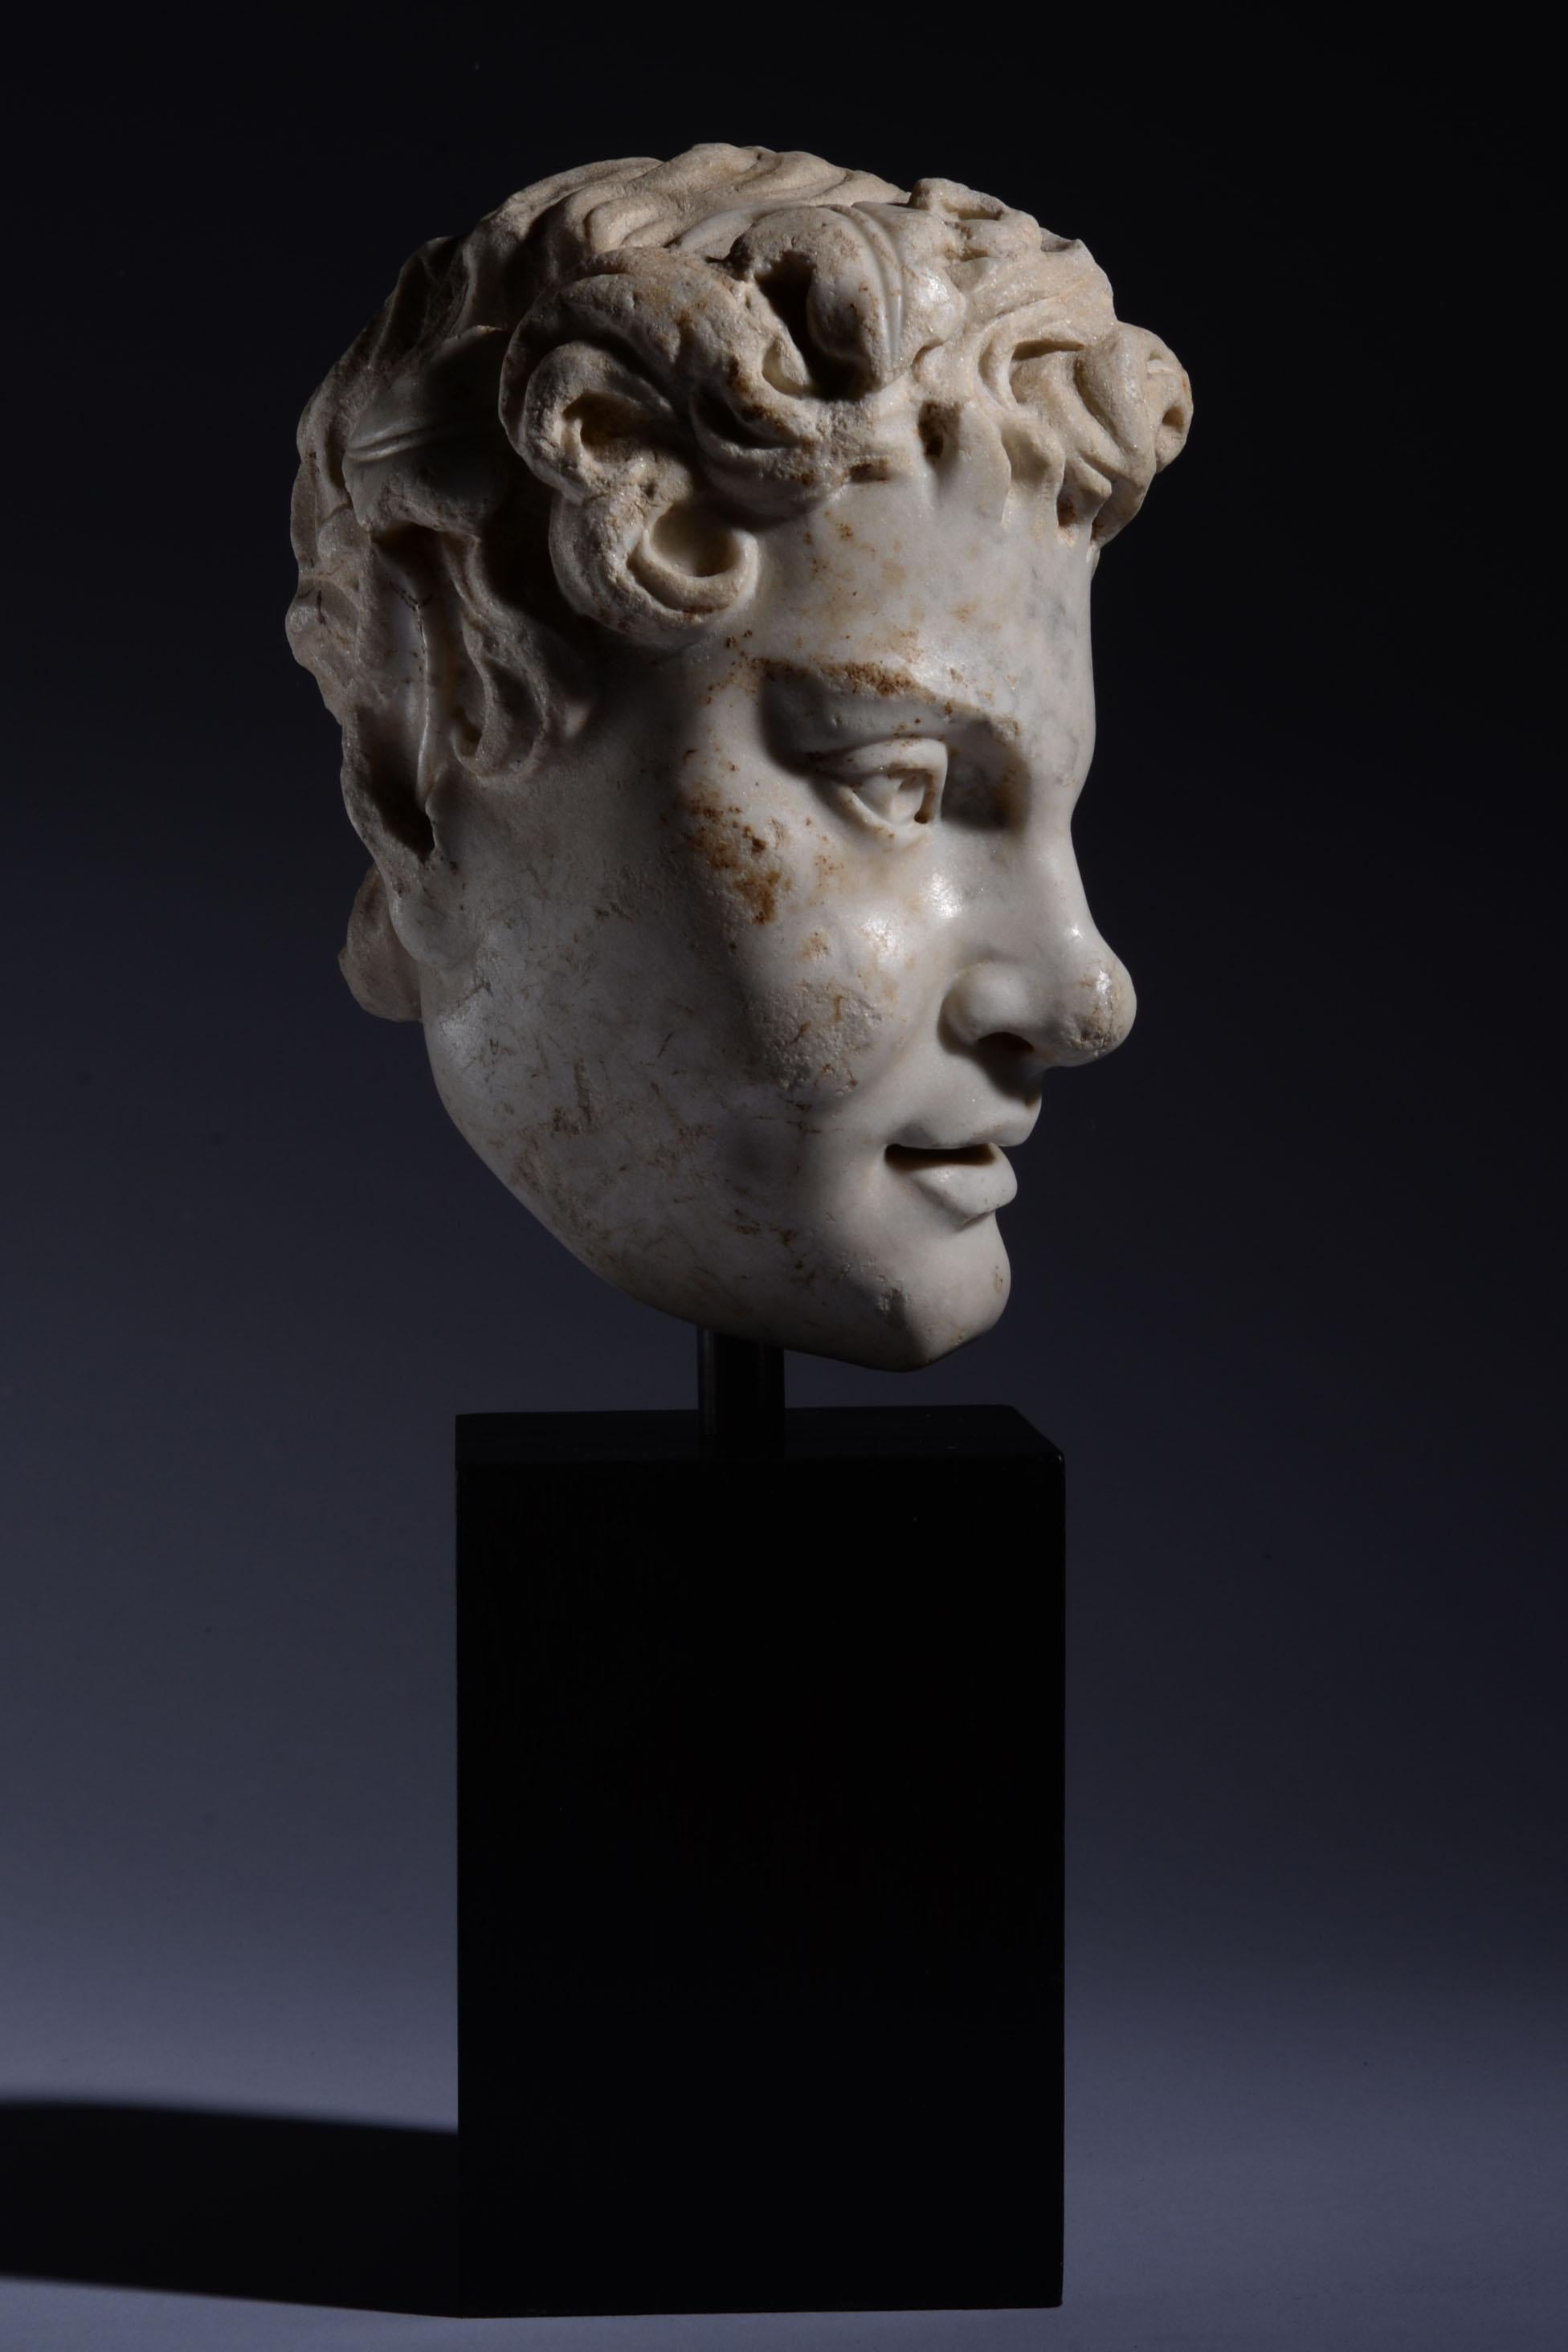 Tête de satyre
Romaine, vers le IIe - IIIe siècle ADS 
Marbre sculpté et hautement poli

Tête de satyre en marbre extrêmement fine, représentée avec une couronne de lierre, des cheveux bouclés et une oreille de chèvre pointue. Les lèvres pleines